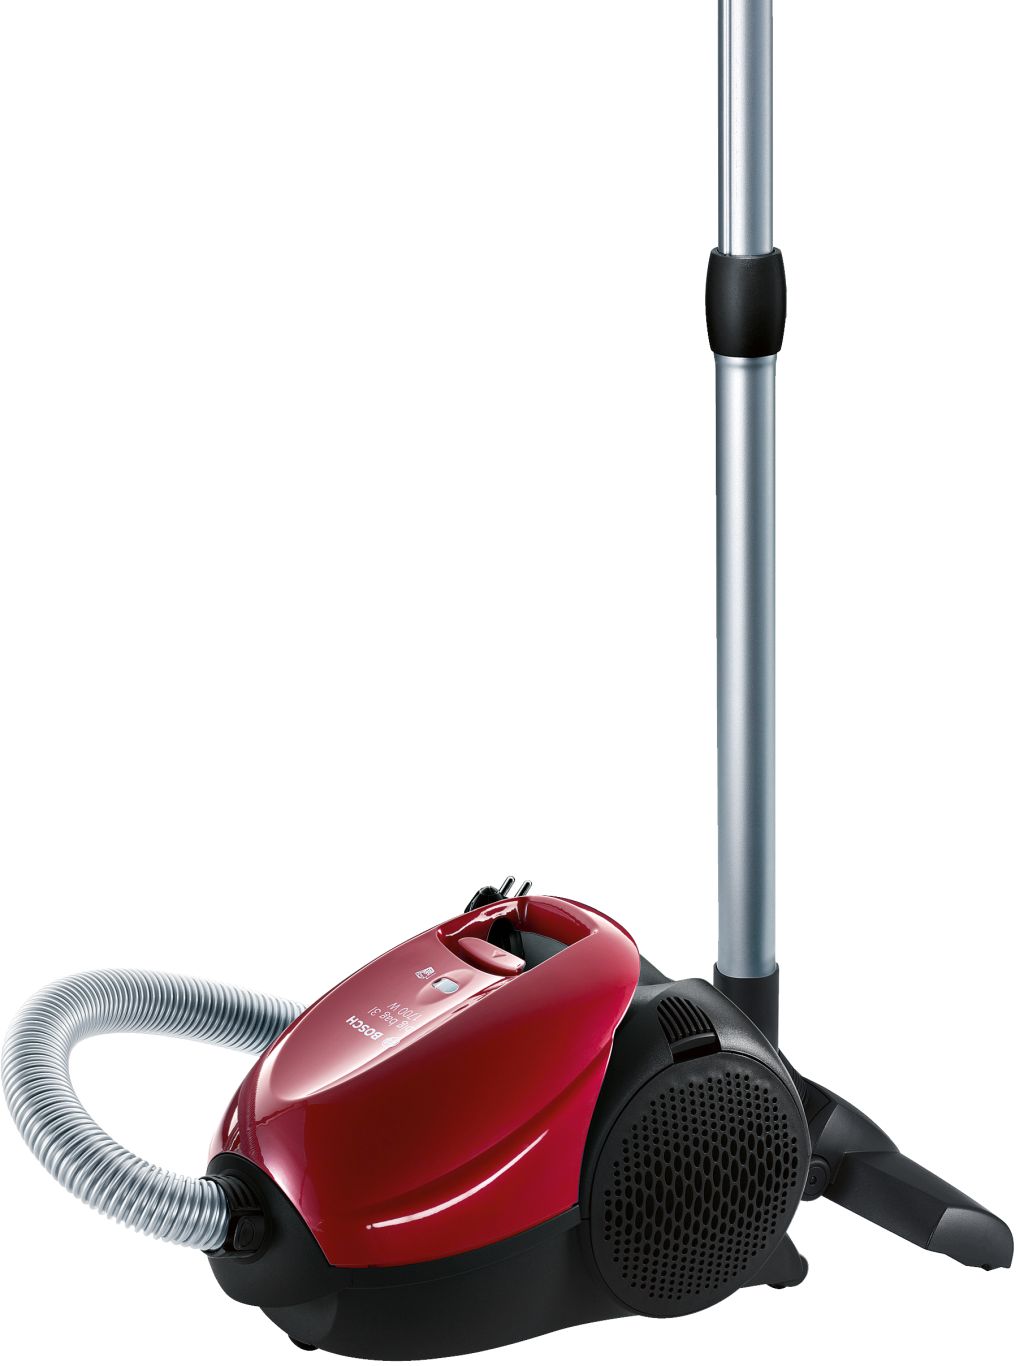 Vacuum cleaner PNG    图片编号:45075